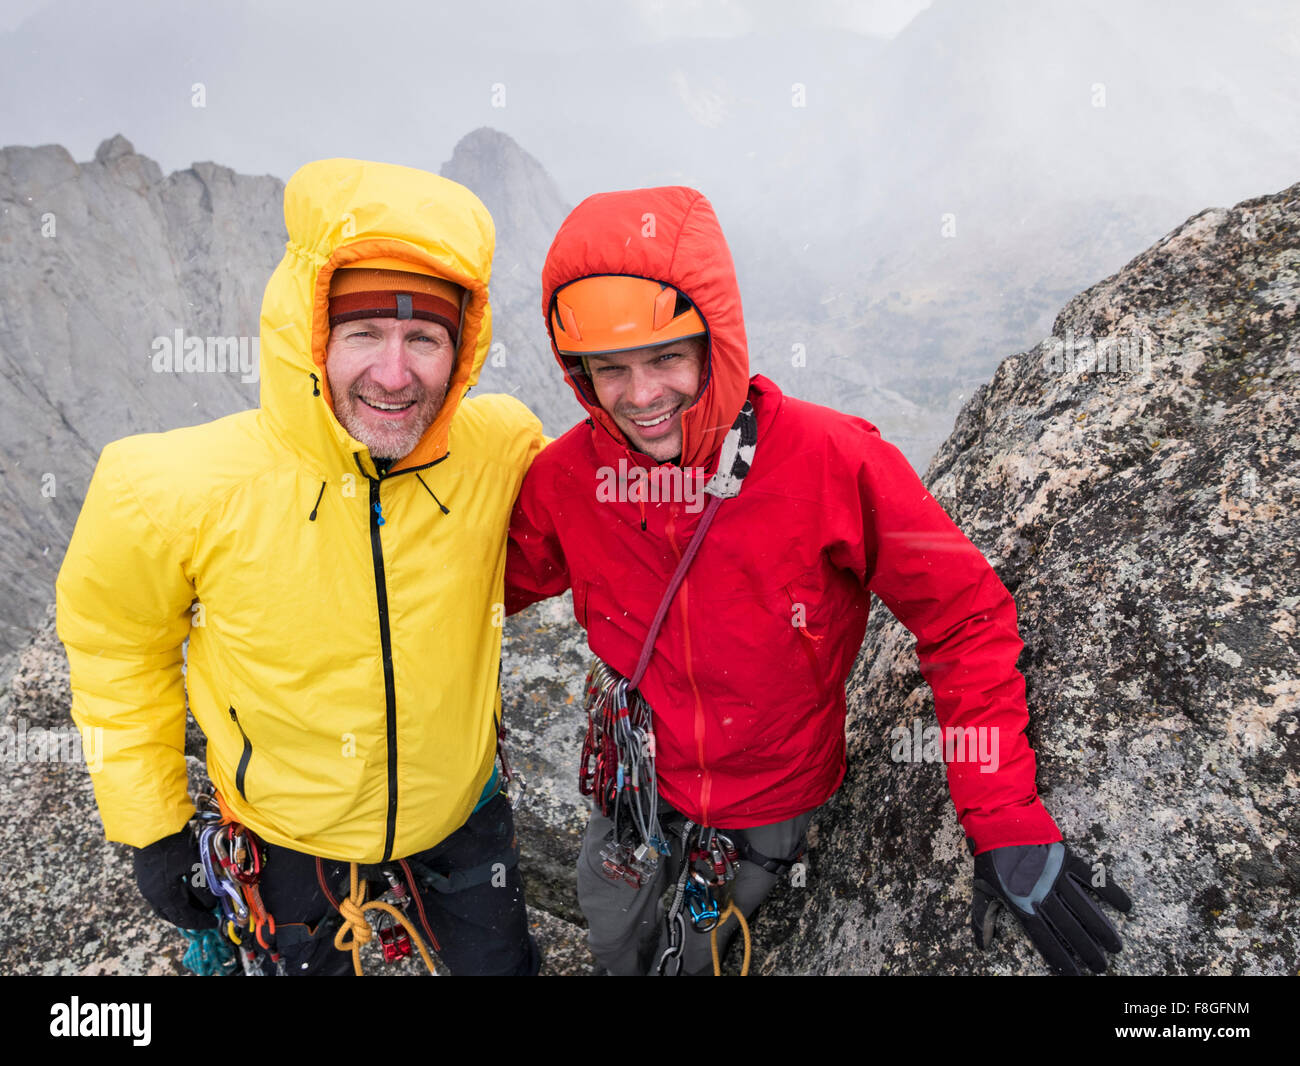 Les grimpeurs du Caucase smiling on hillside Banque D'Images